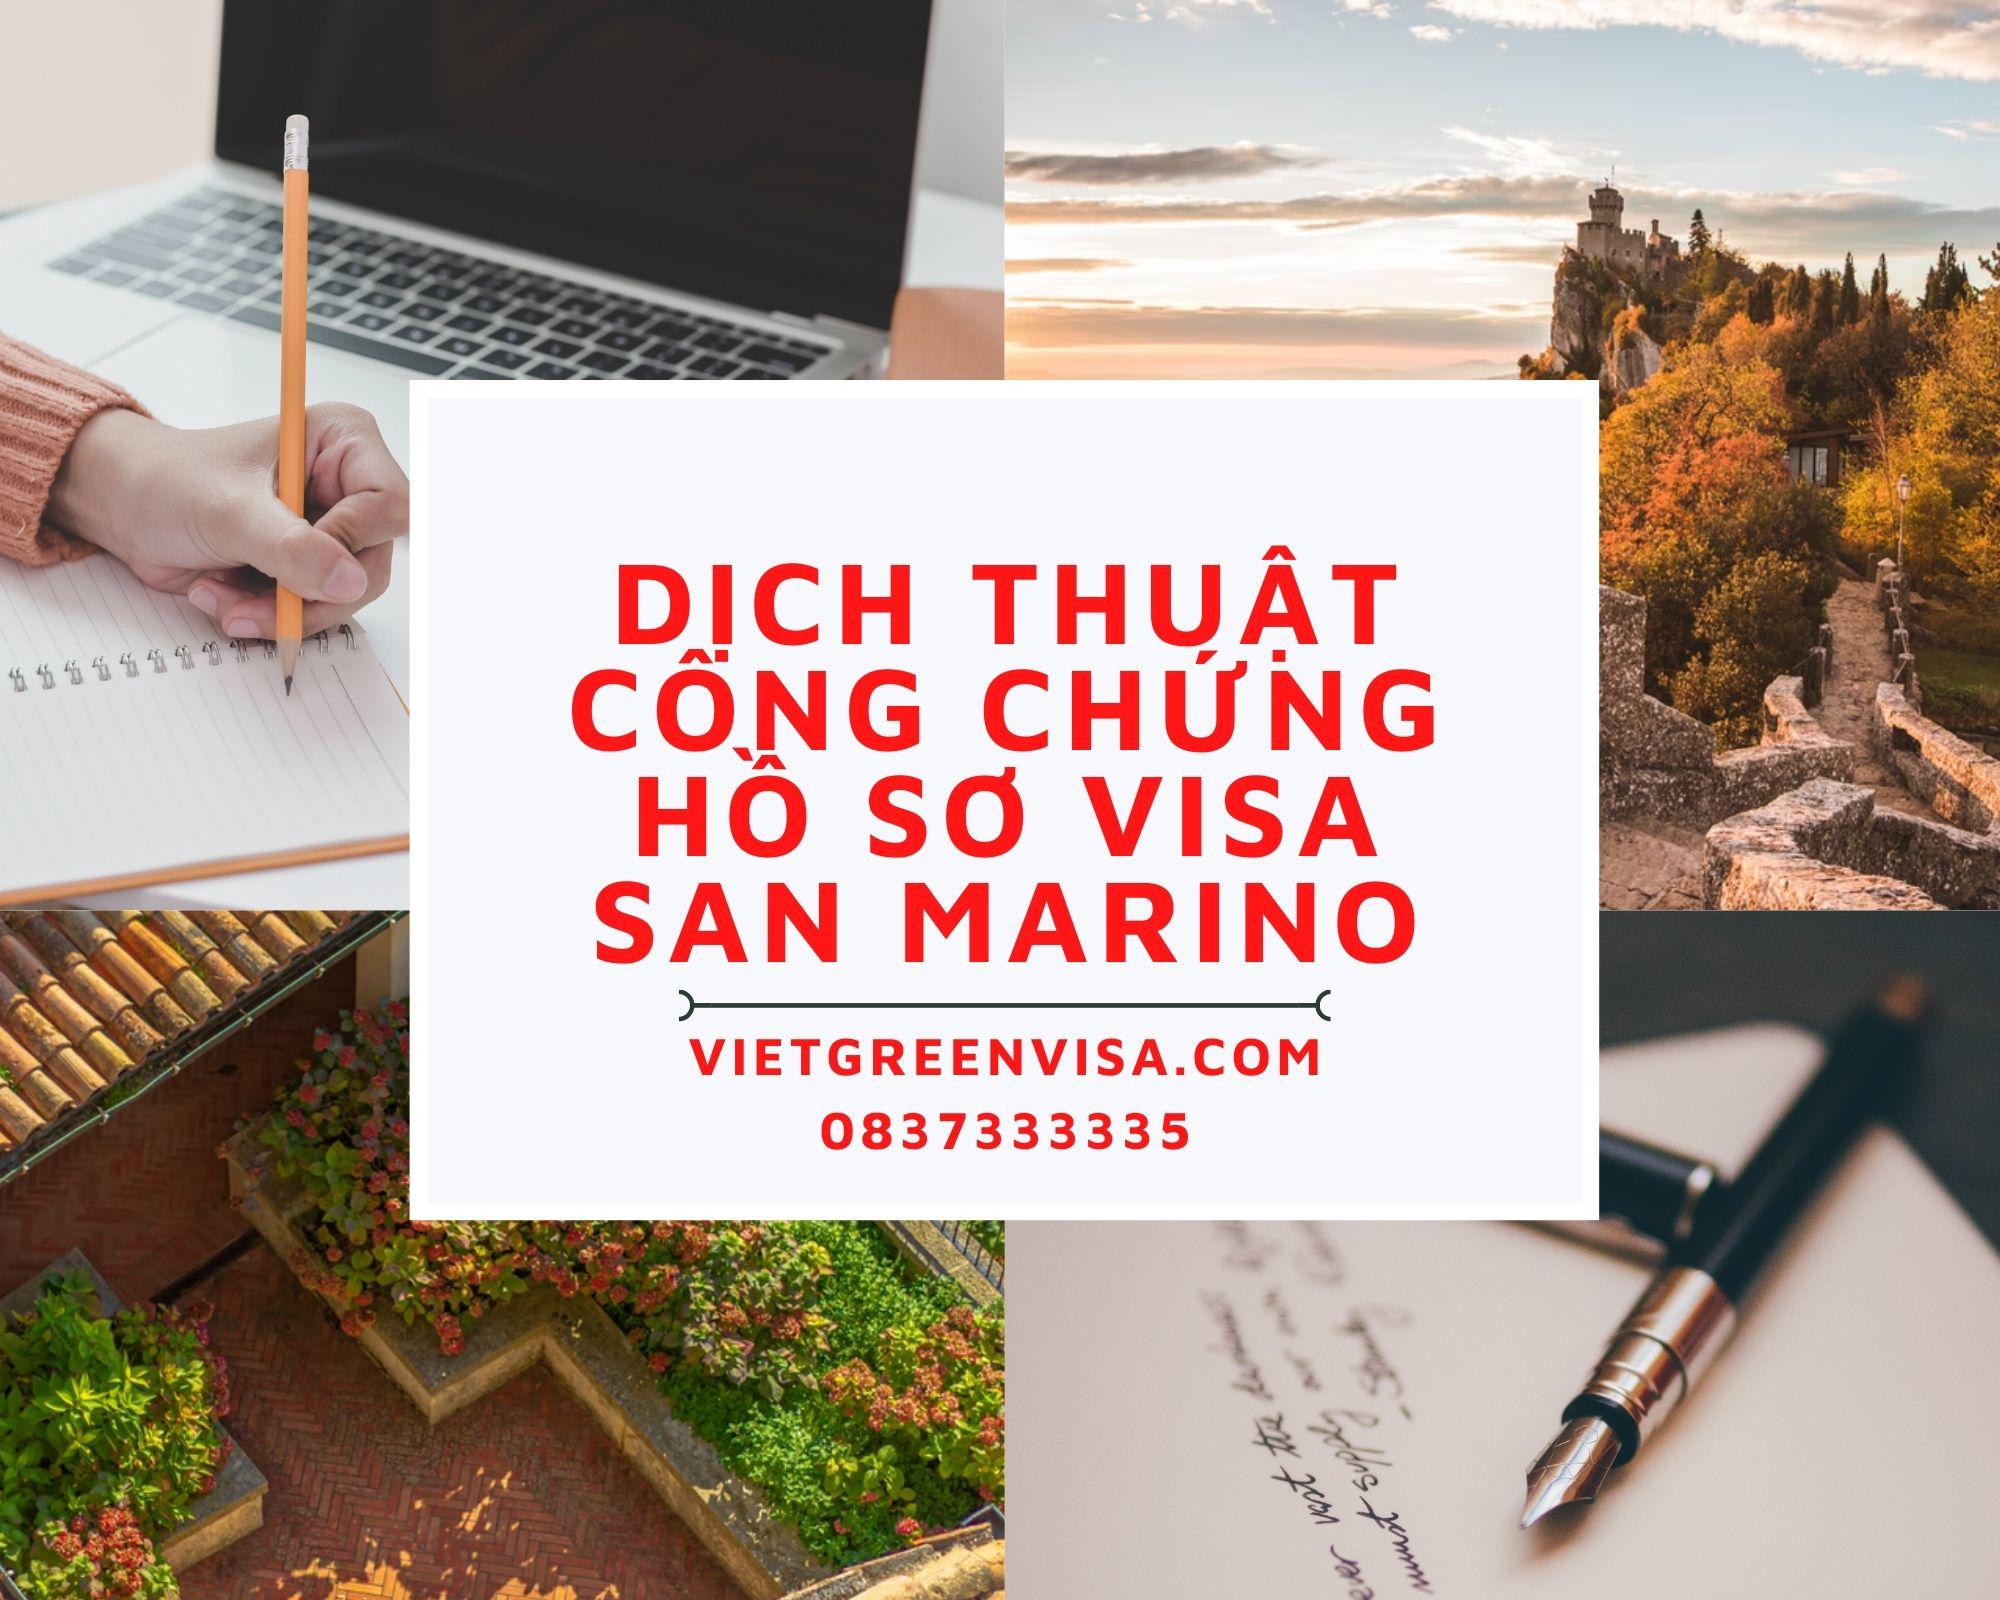 Hỗ trợ dịch thuật công chứng hồ sơ visa du lịch, du học San Marino nhanh rẻ